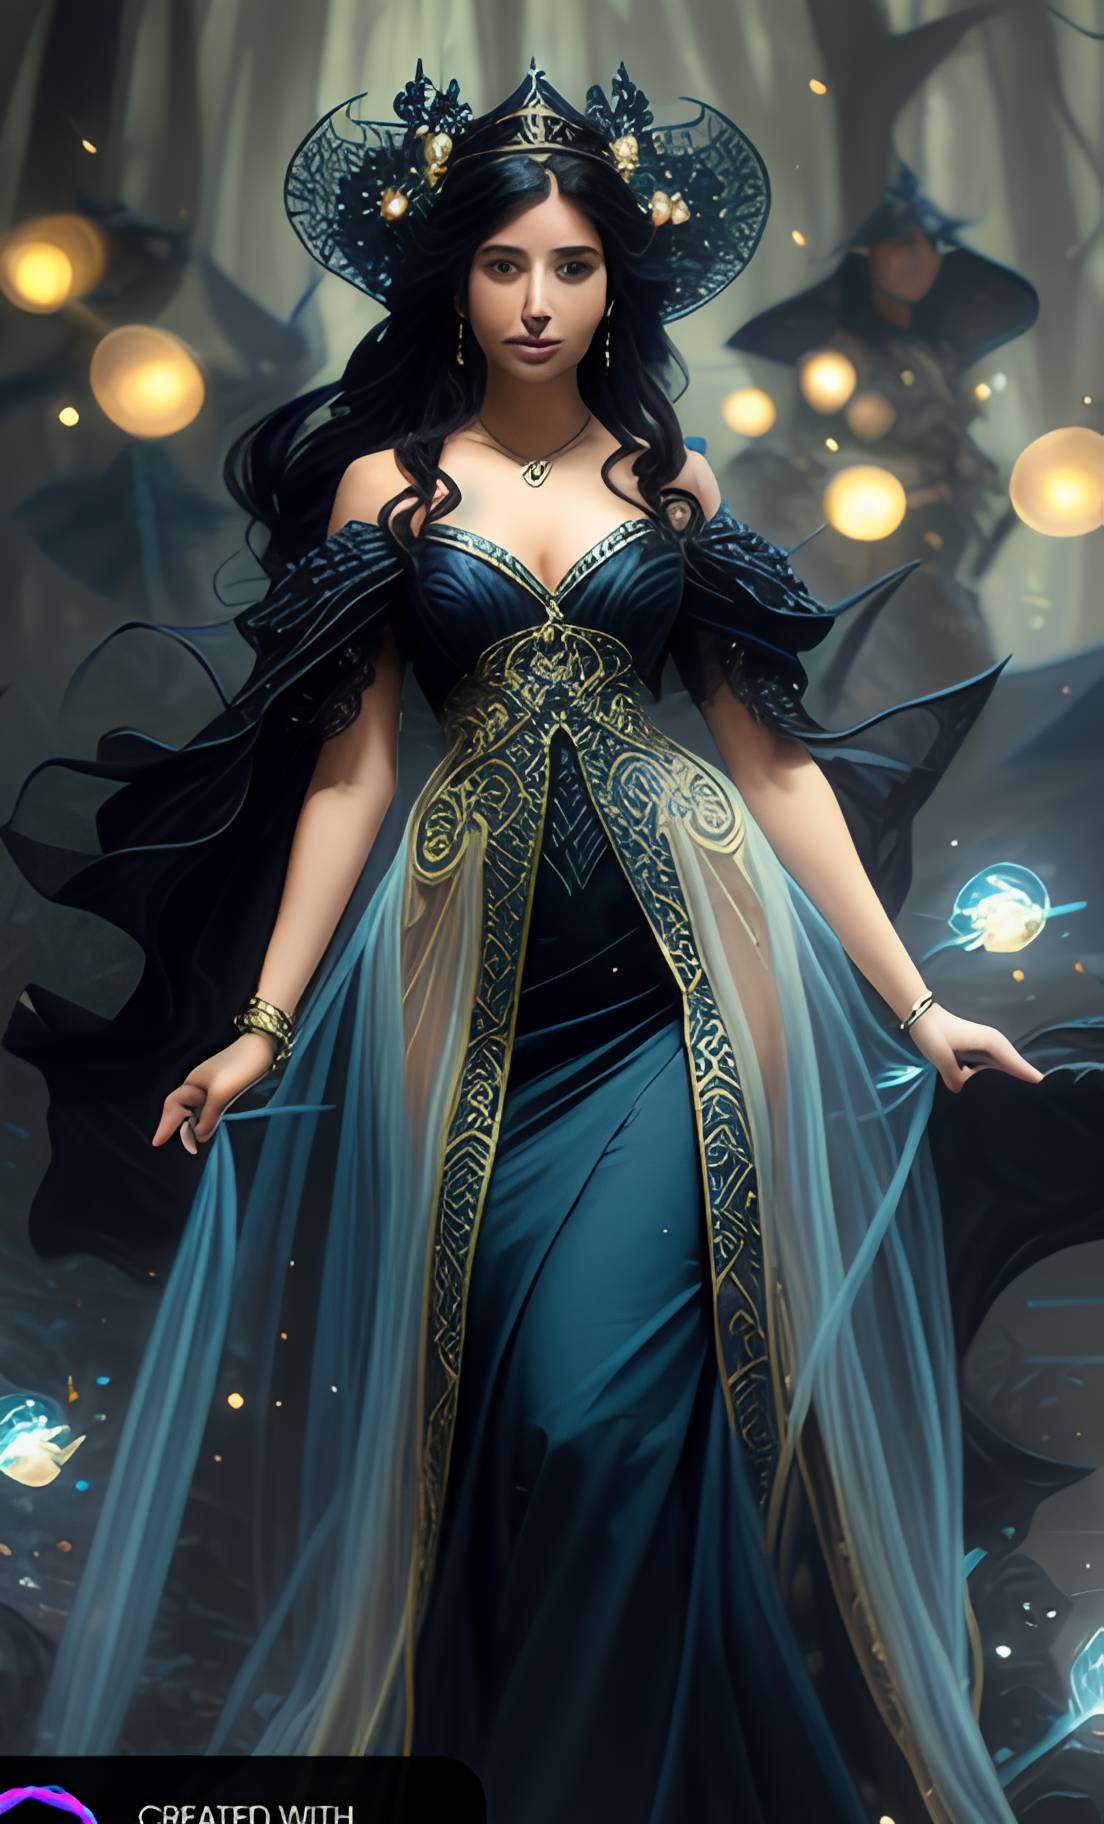 Royal Fantasy dress by Diva161 on DeviantArt